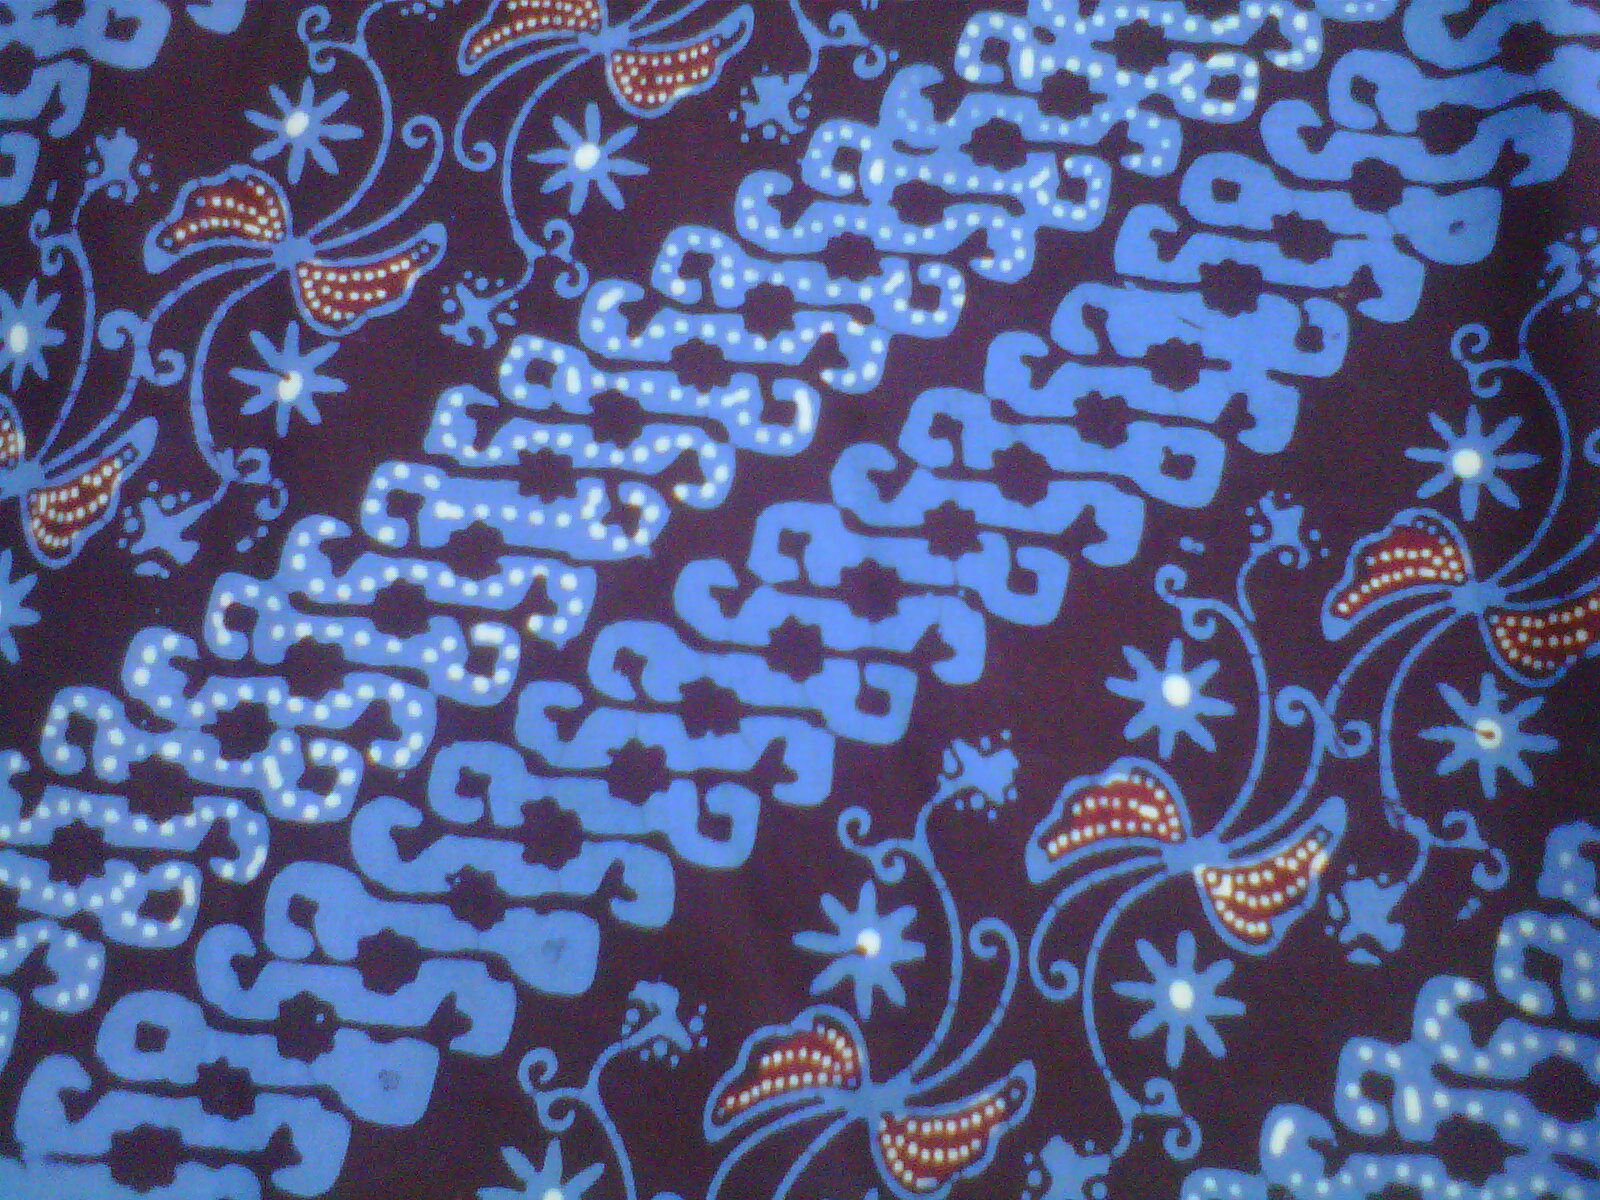 Gambar sketsa batik tradisional - 28 images - batik of 